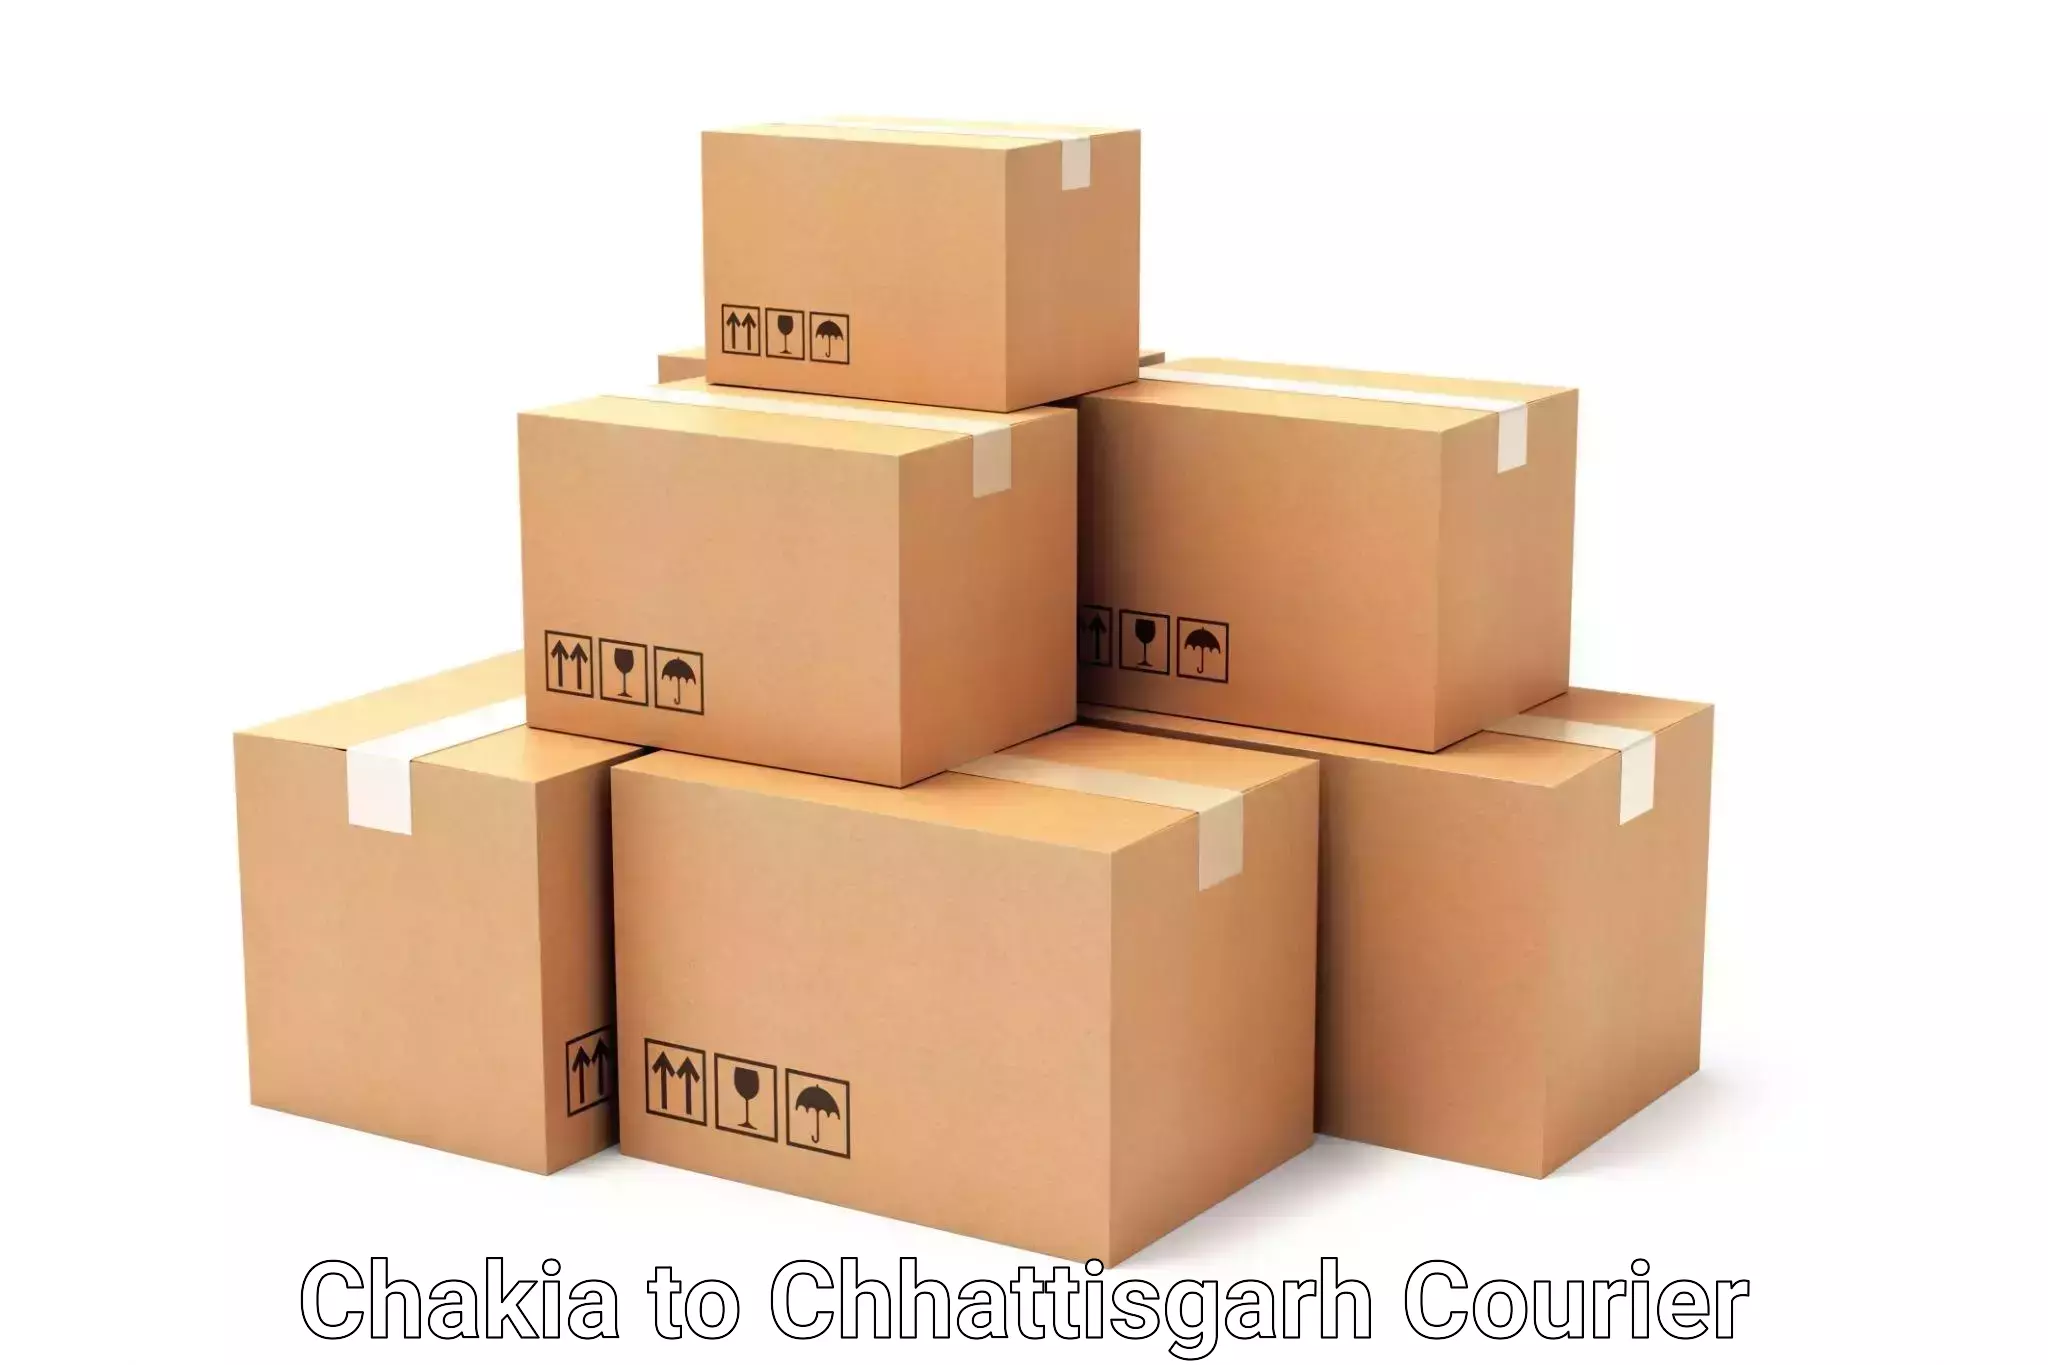 Luggage forwarding service Chakia to Chhattisgarh